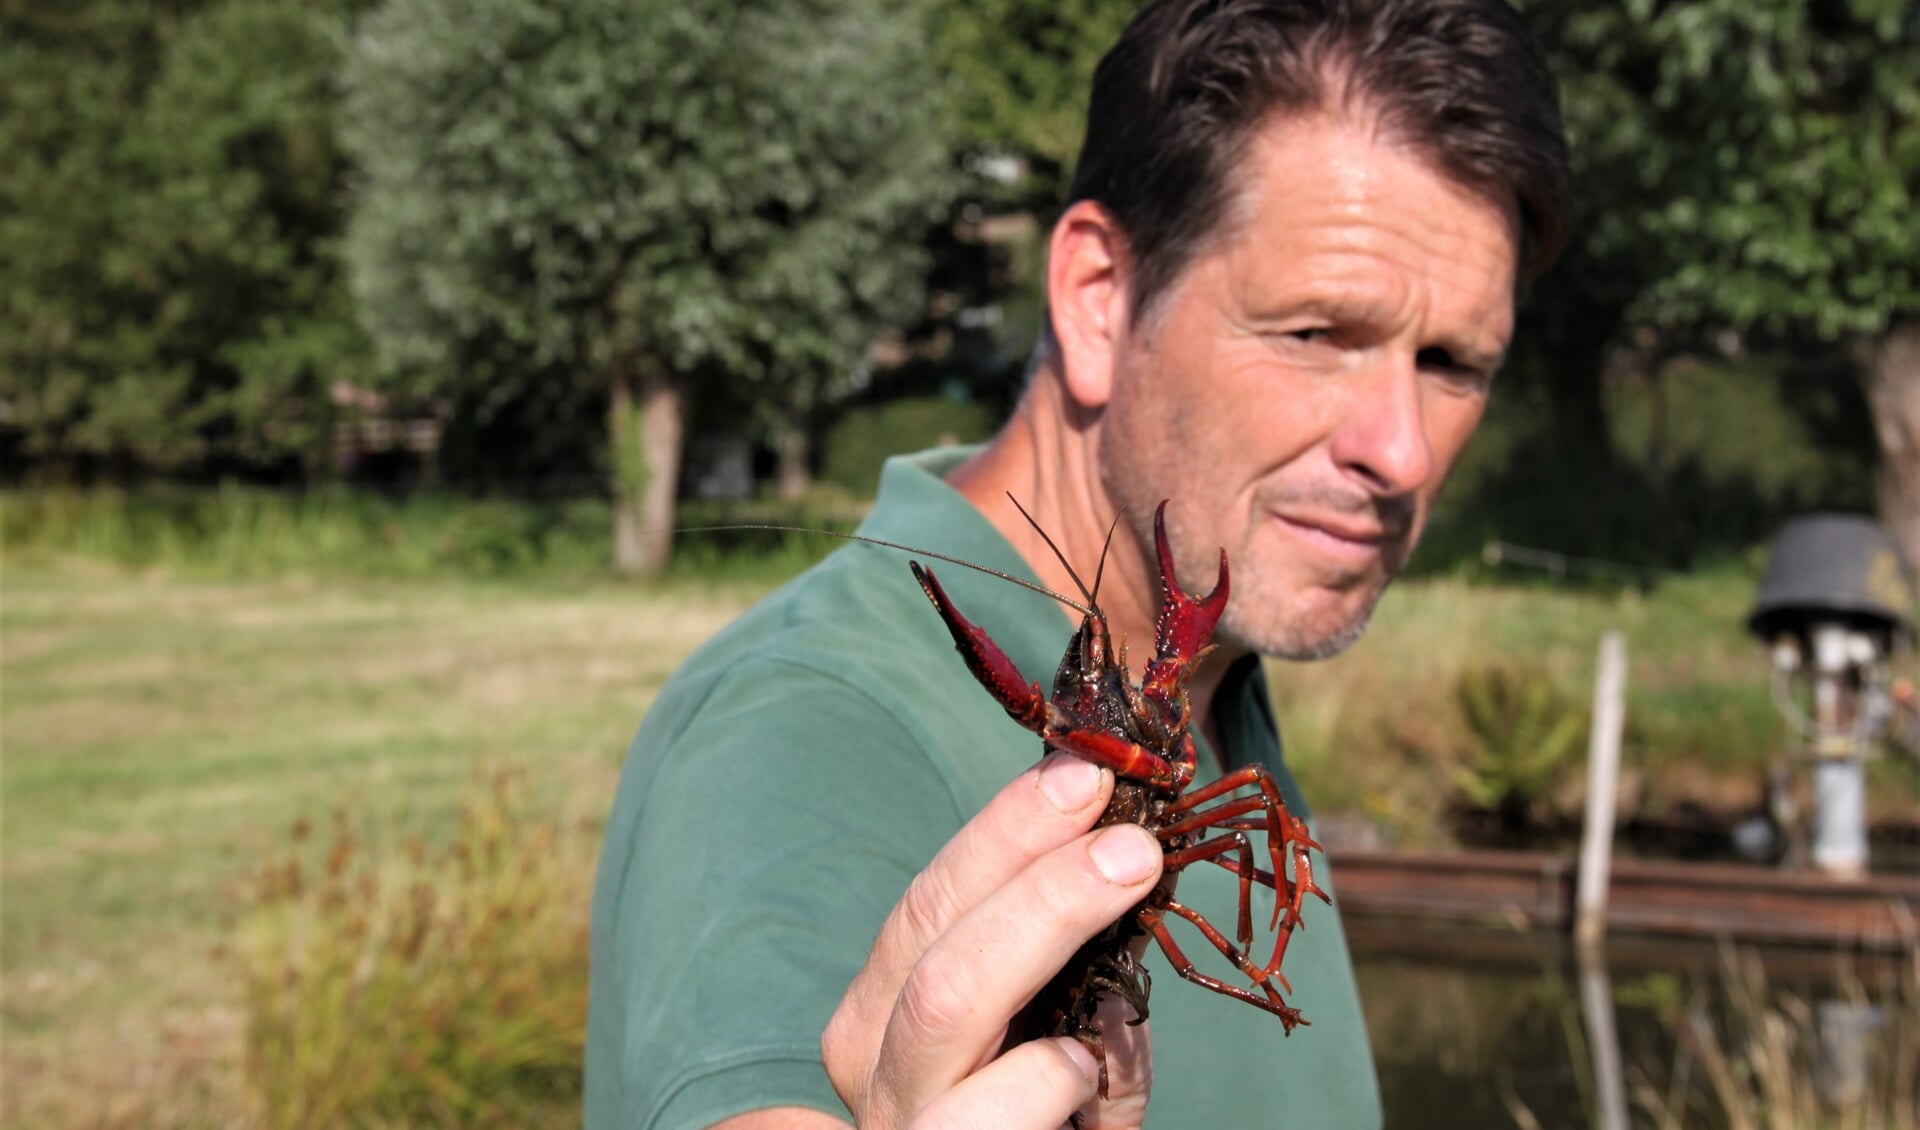 • Onderzoeker Fabrice Ottburg met in zijn hand een rode Amerikaanse rivierkreeft.